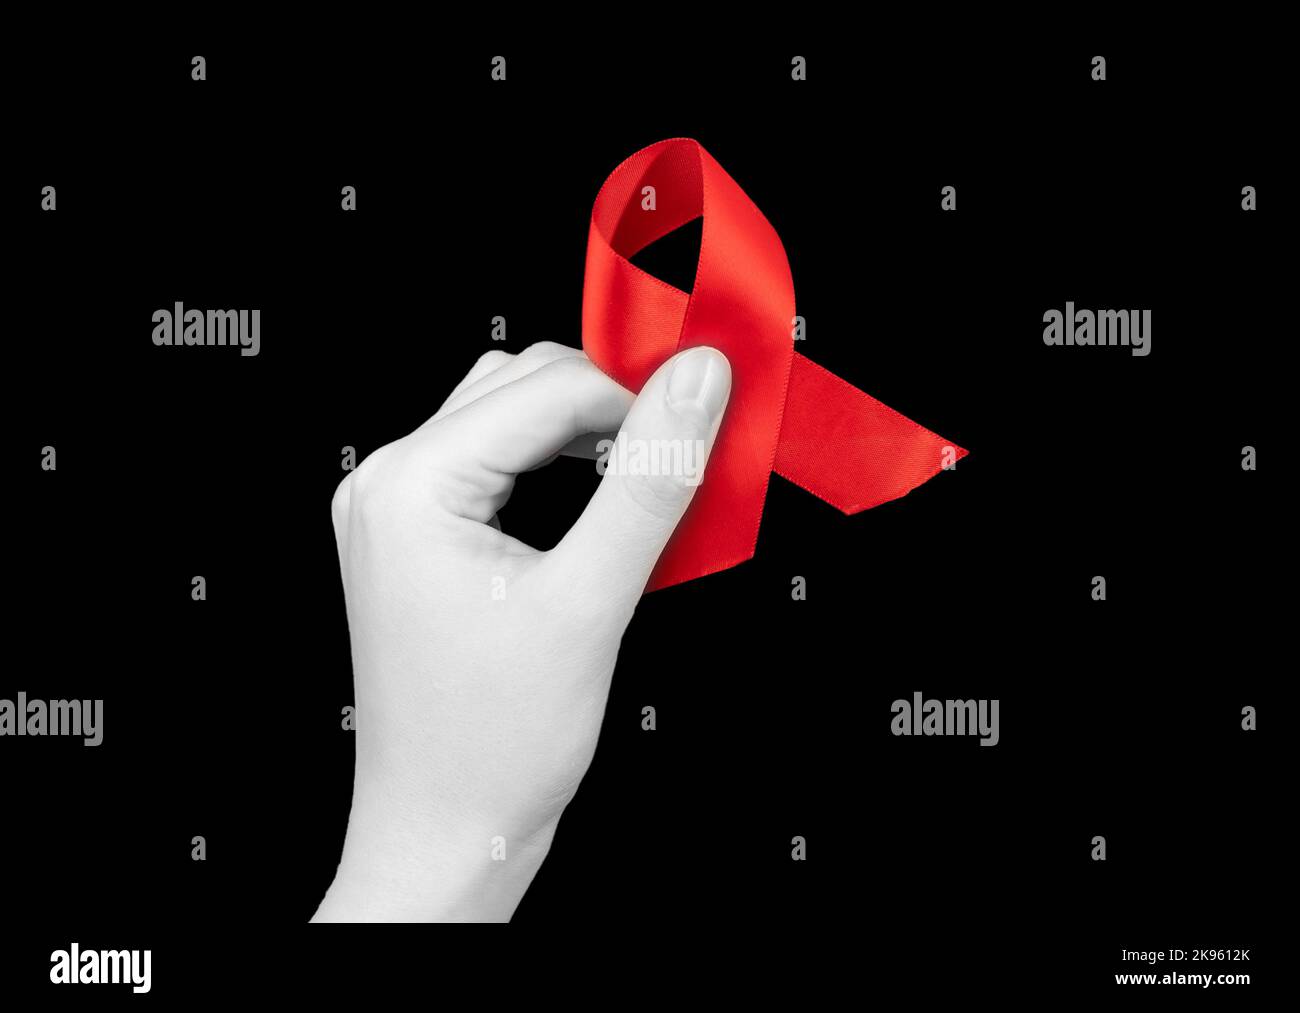 Nastro rosso in mano su sfondo nero per la giornata di sensibilizzazione sull'HIV AIDS, 1 dicembre. Foto di alta qualità Foto Stock